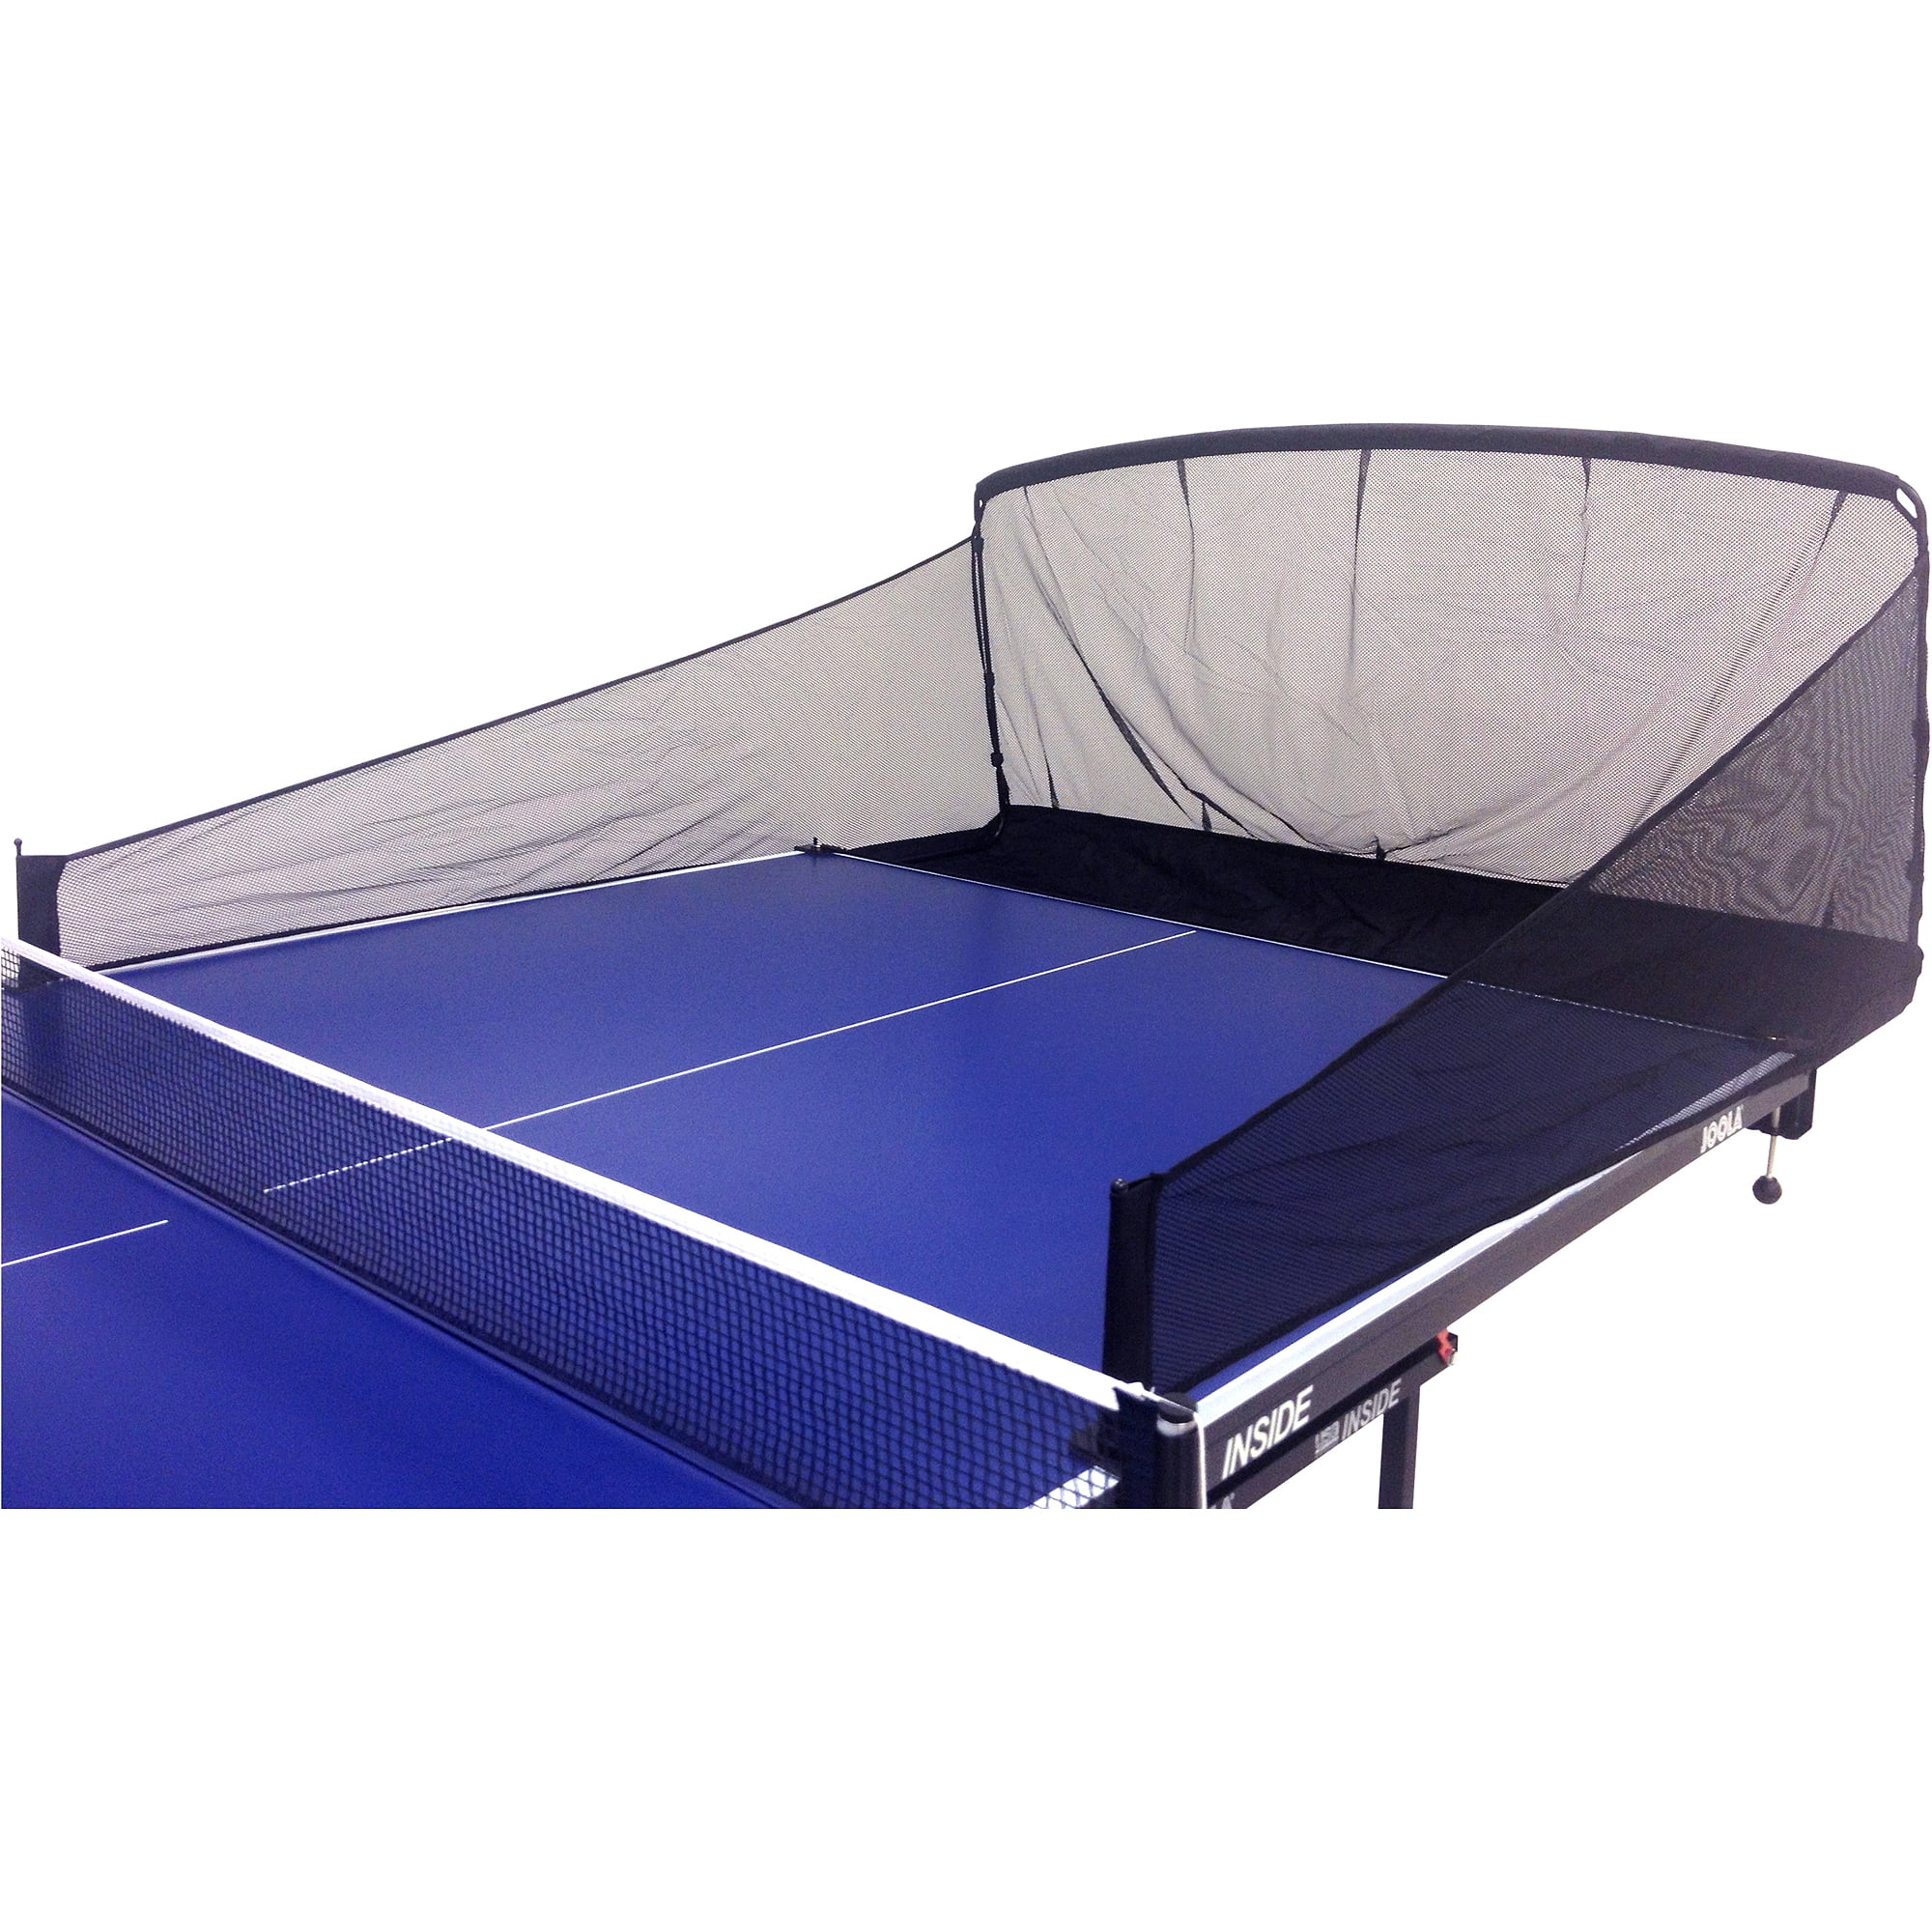 iPong Carbon Fiber Table Tennis Ball Catch Net, Black